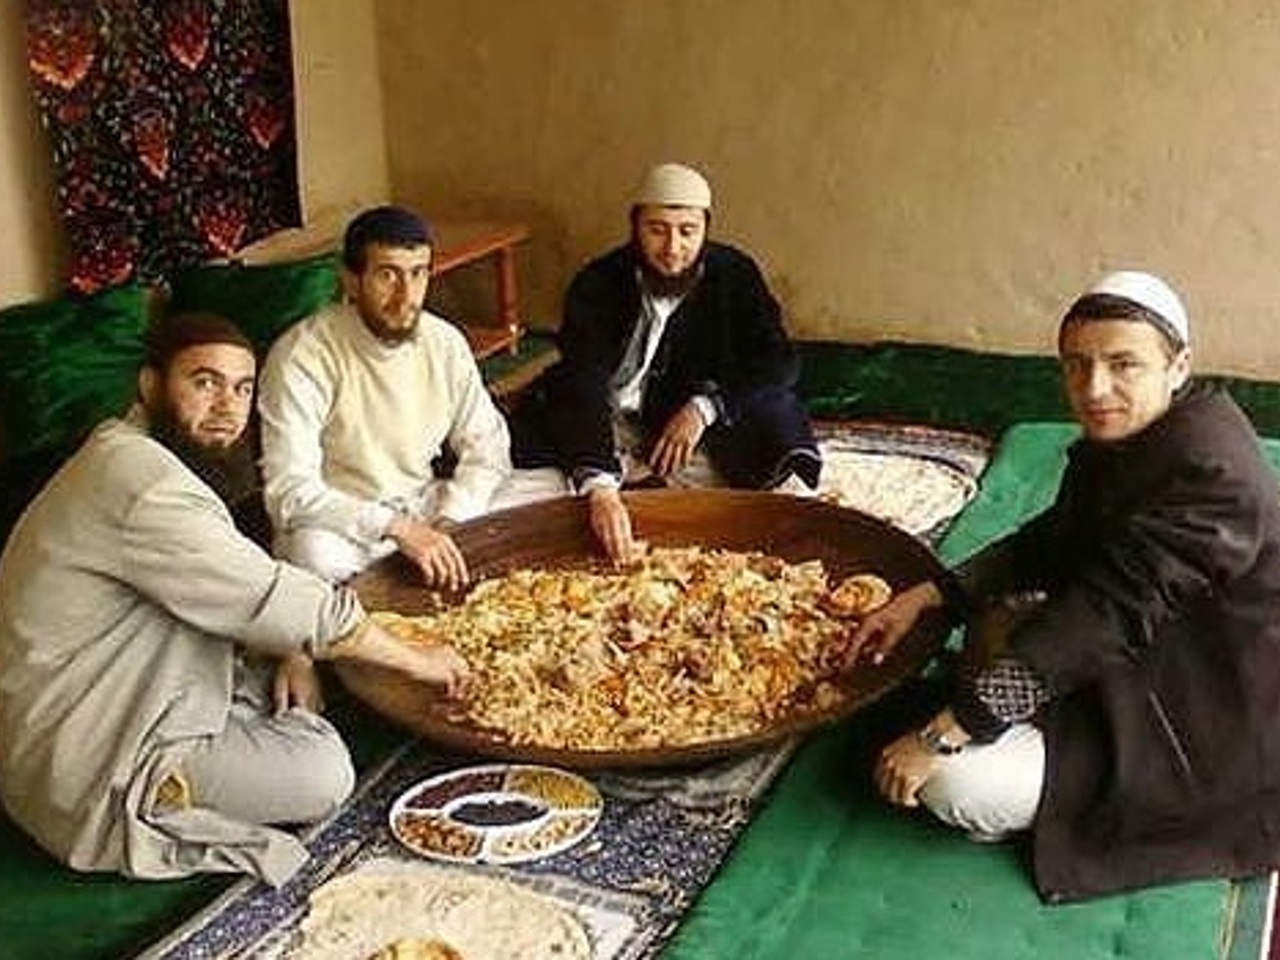 Отношения по таджикски. Узбеки едят плов. Узбеки едят плов на полу. Узбеки едят на полу. Таджики едят плов.